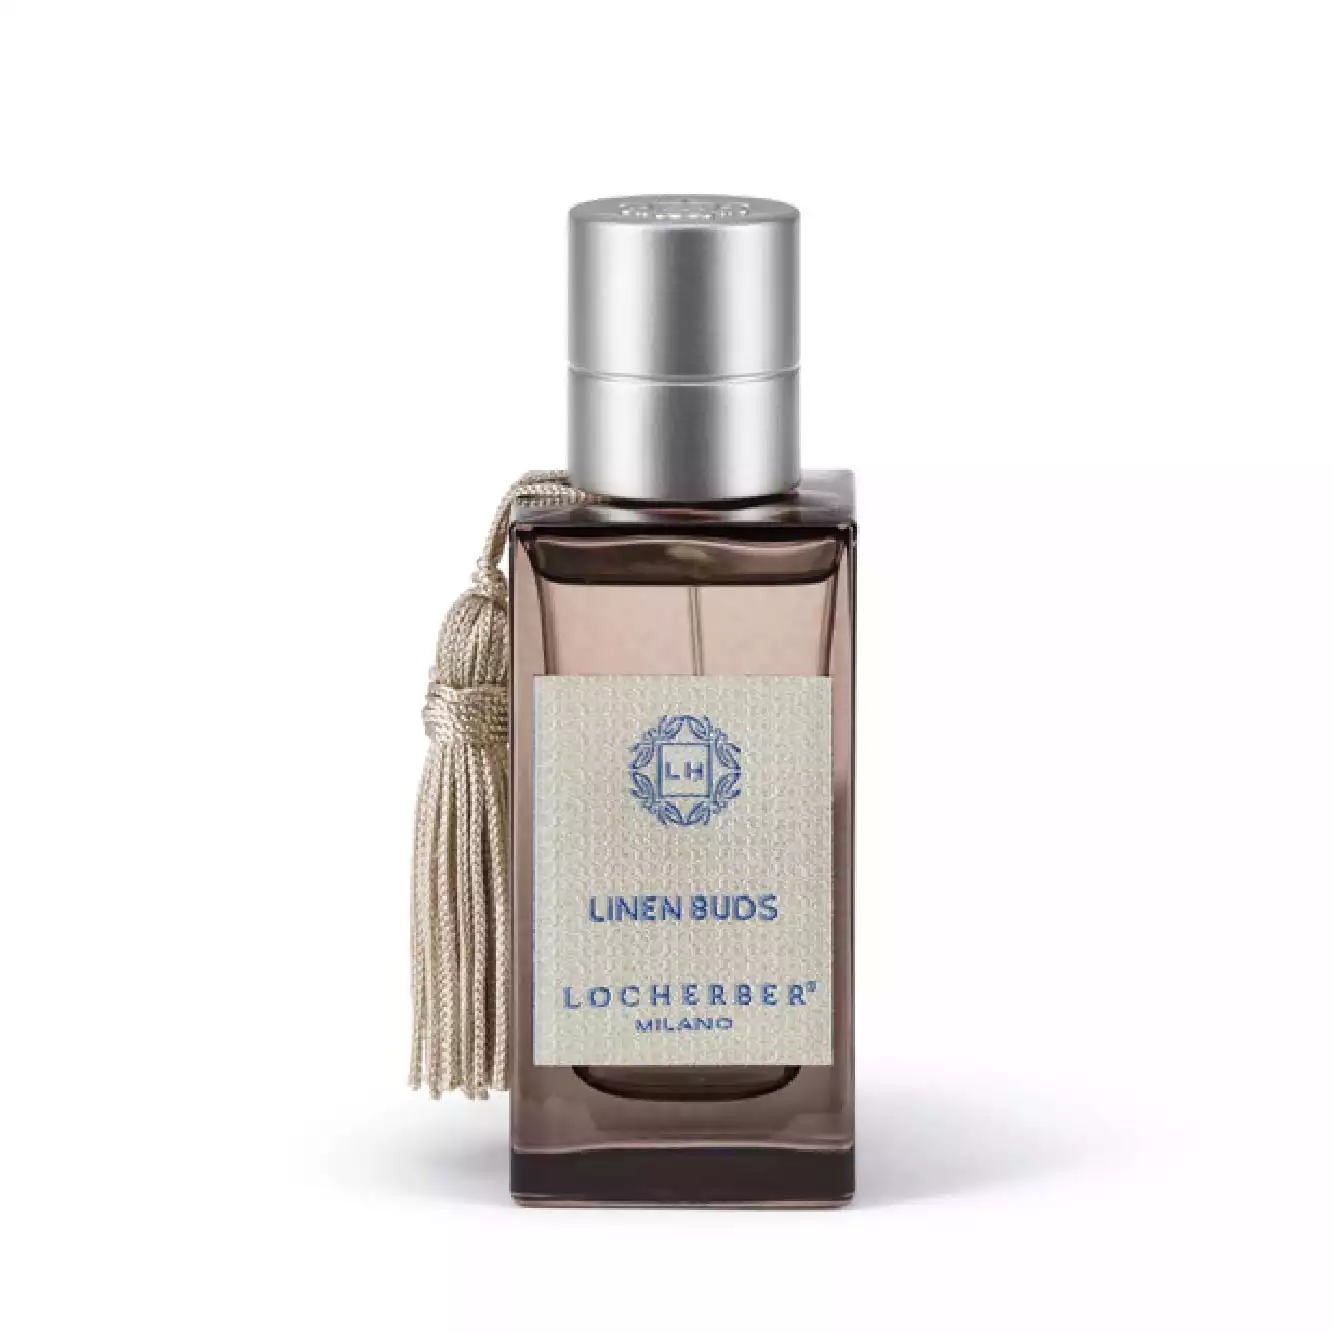 LOCHERBER – Linen Buds parfum